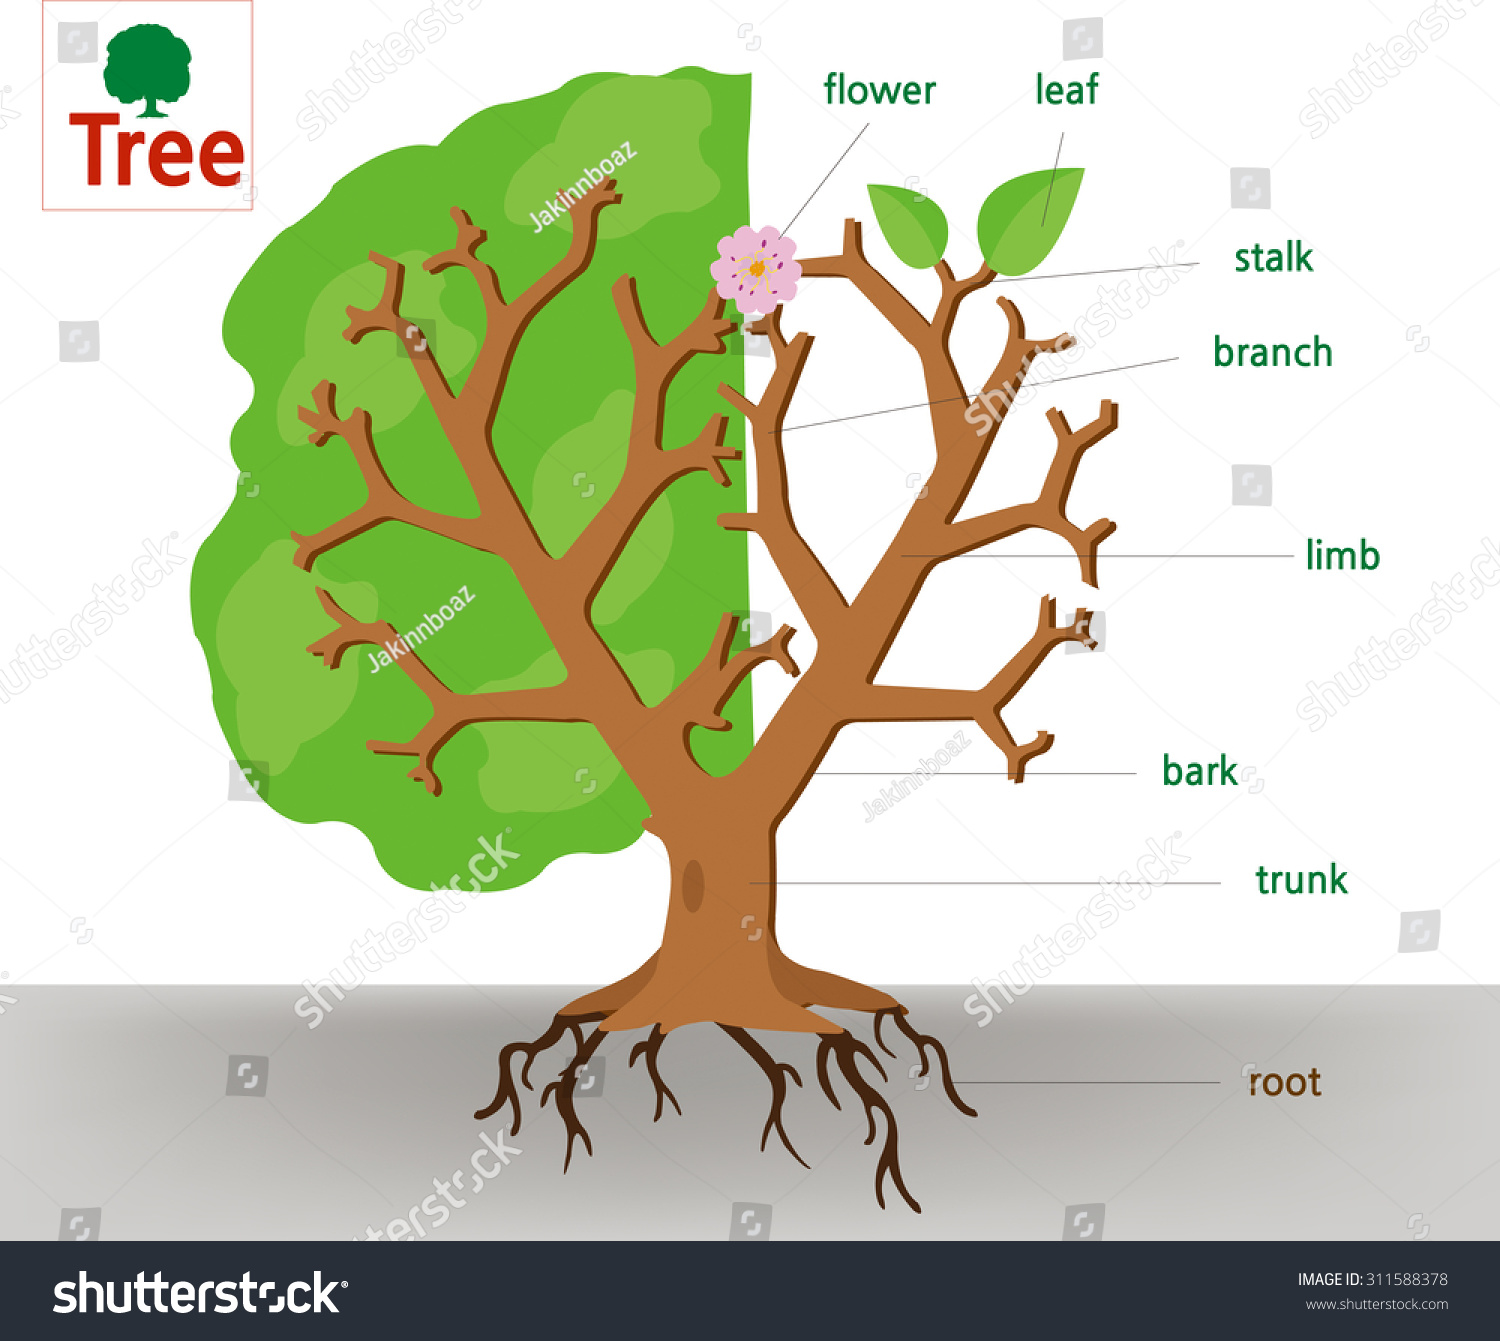 Une anatomie d'un arbre : image vectorielle de stock (libre de droits)  311588378